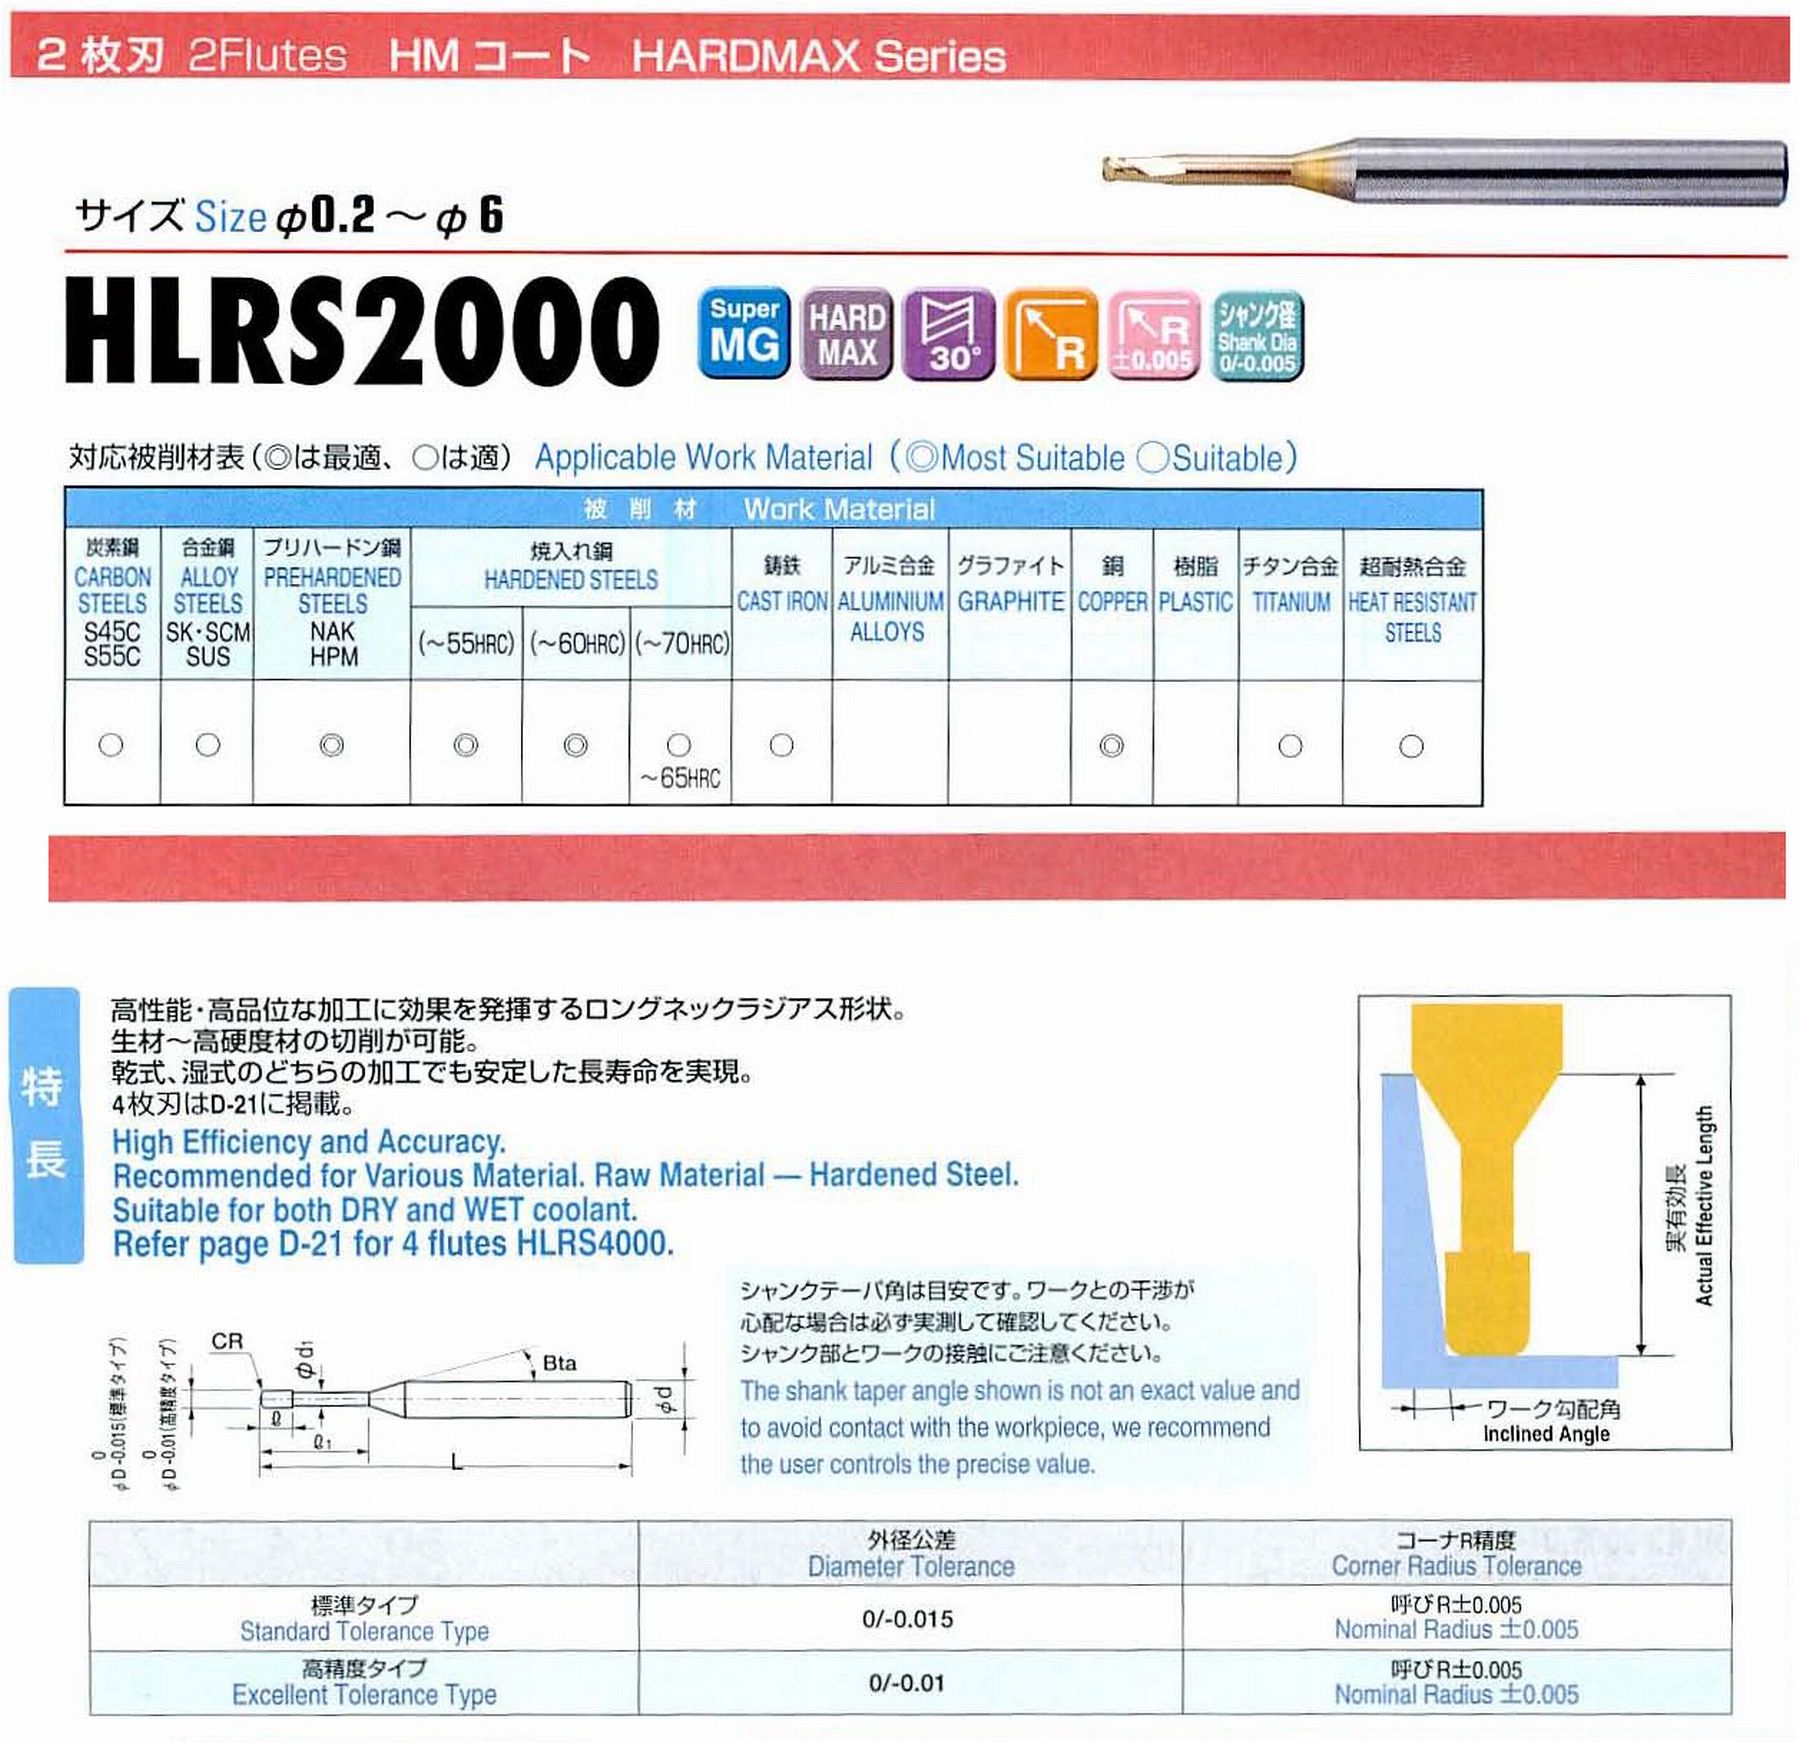 ユニオンツール 2枚刃 HLRS2015-05-160 外径1.5 コーナ半径R0.5 有効長16 刃長1.5 首径1.45 シャンクテーパ角16° 全長55 シャンク径4